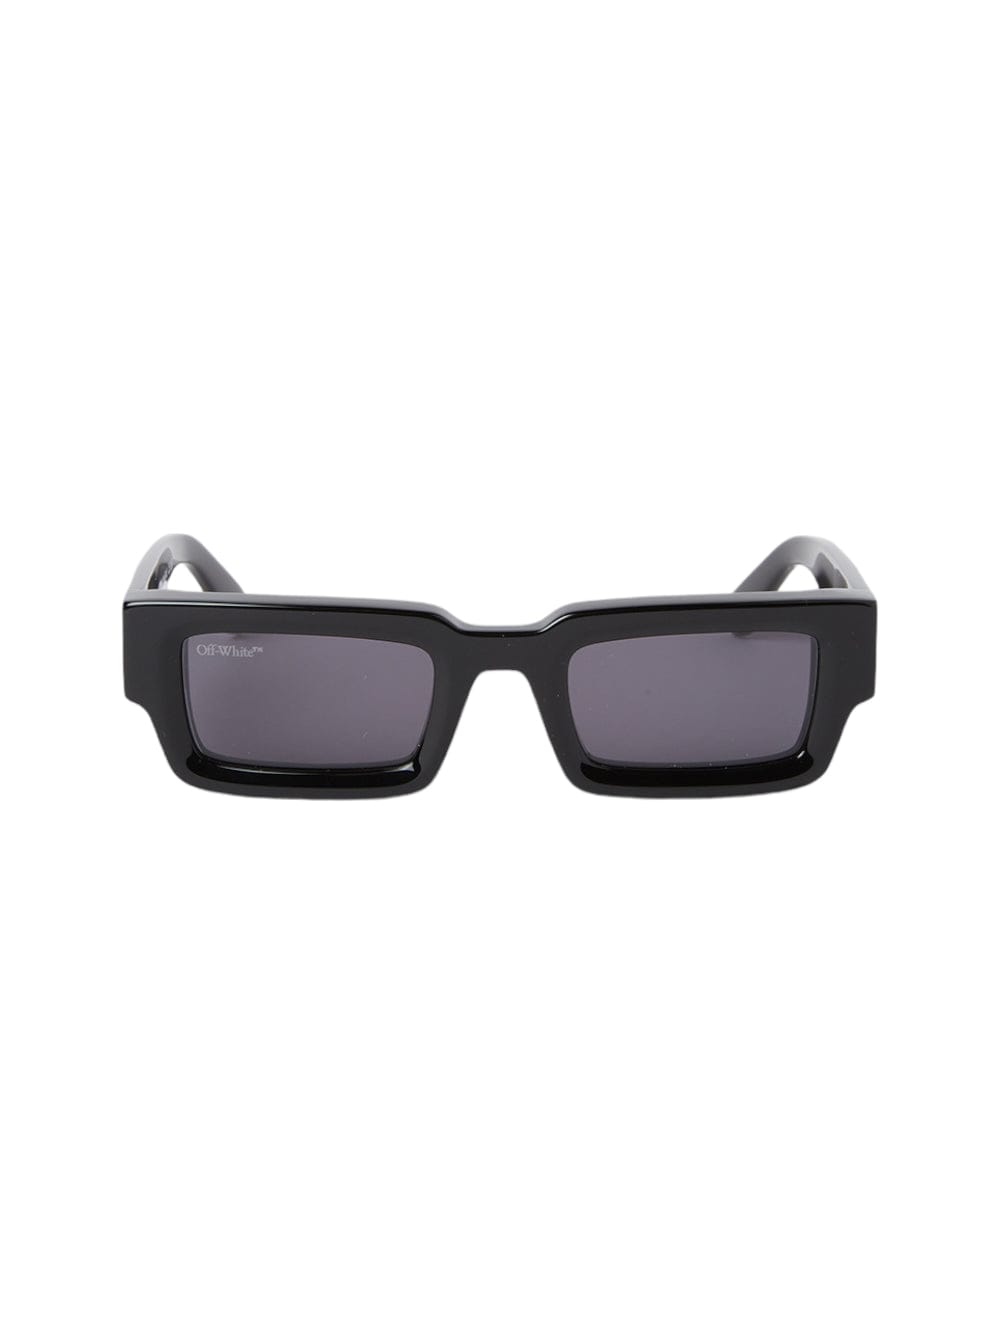 Lecce - Black Sunglasses